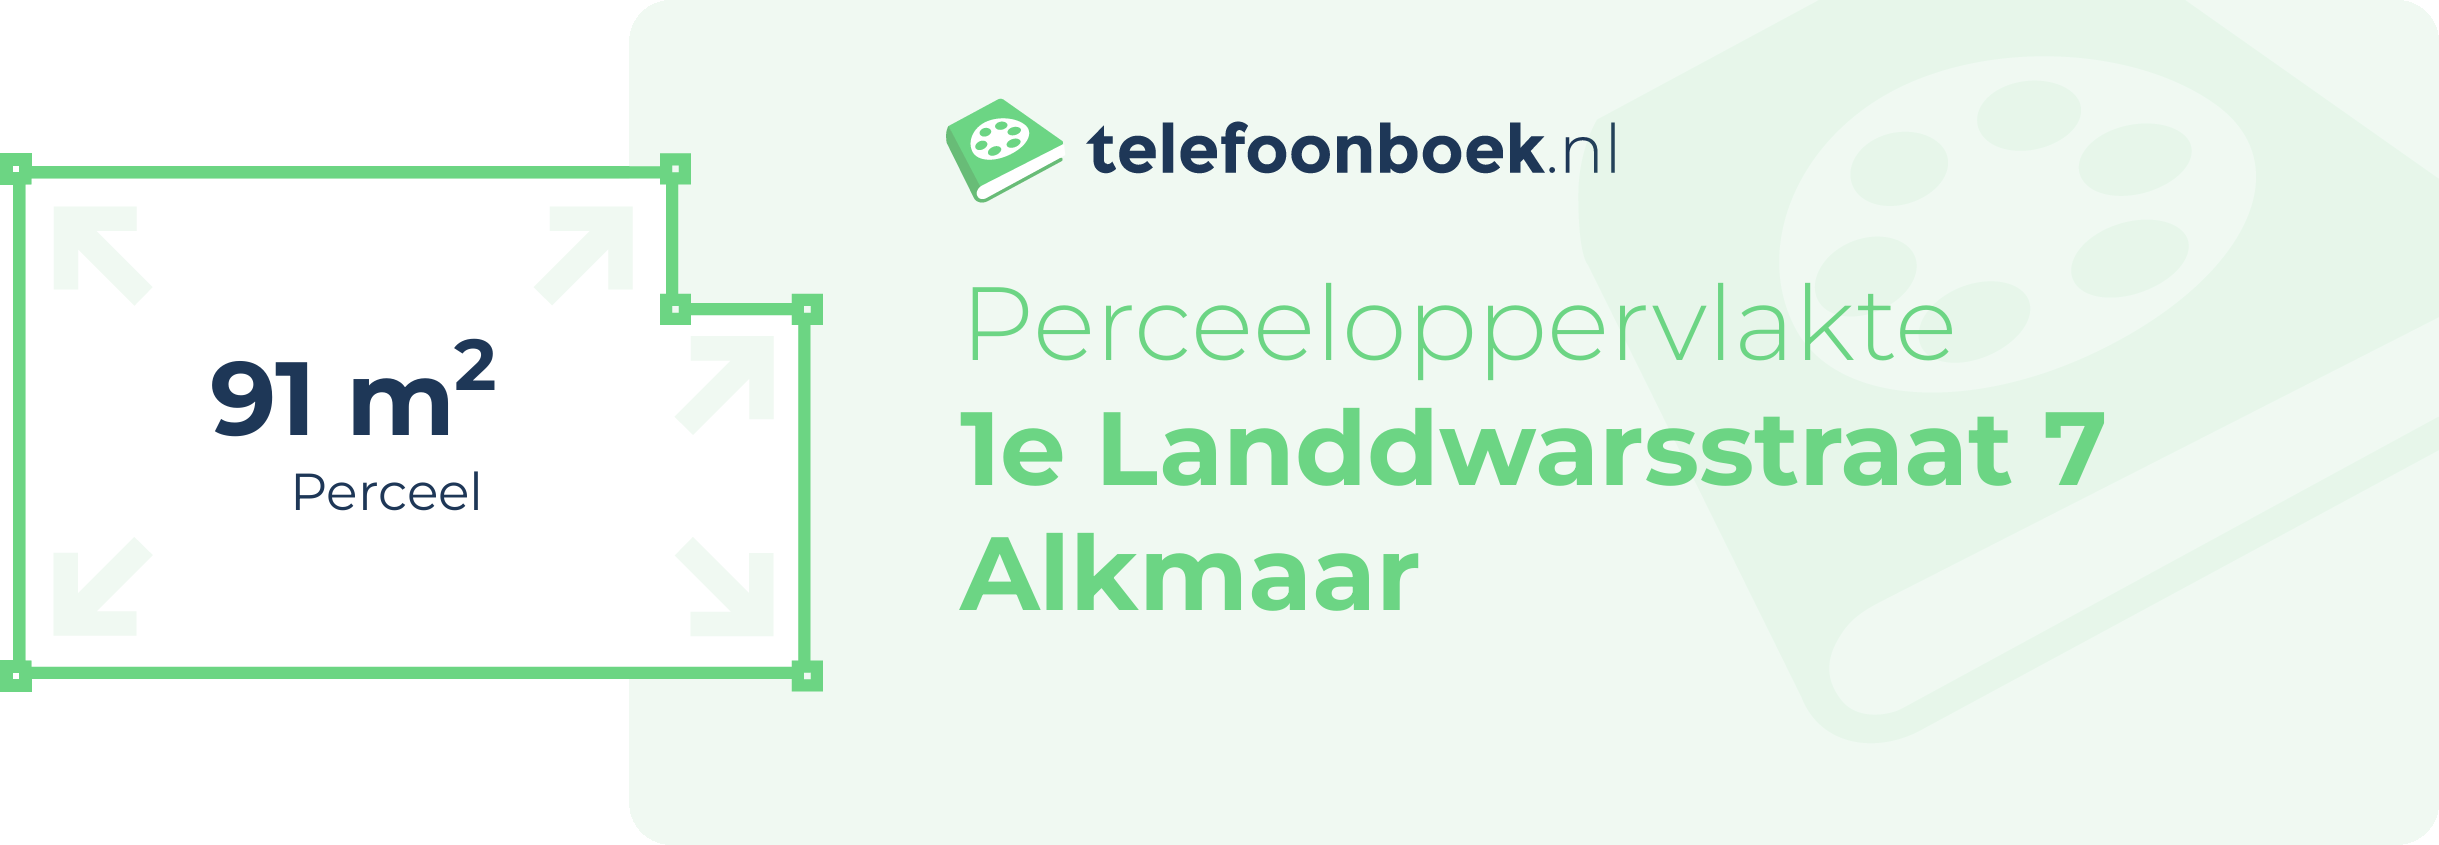 Perceeloppervlakte 1e Landdwarsstraat 7 Alkmaar